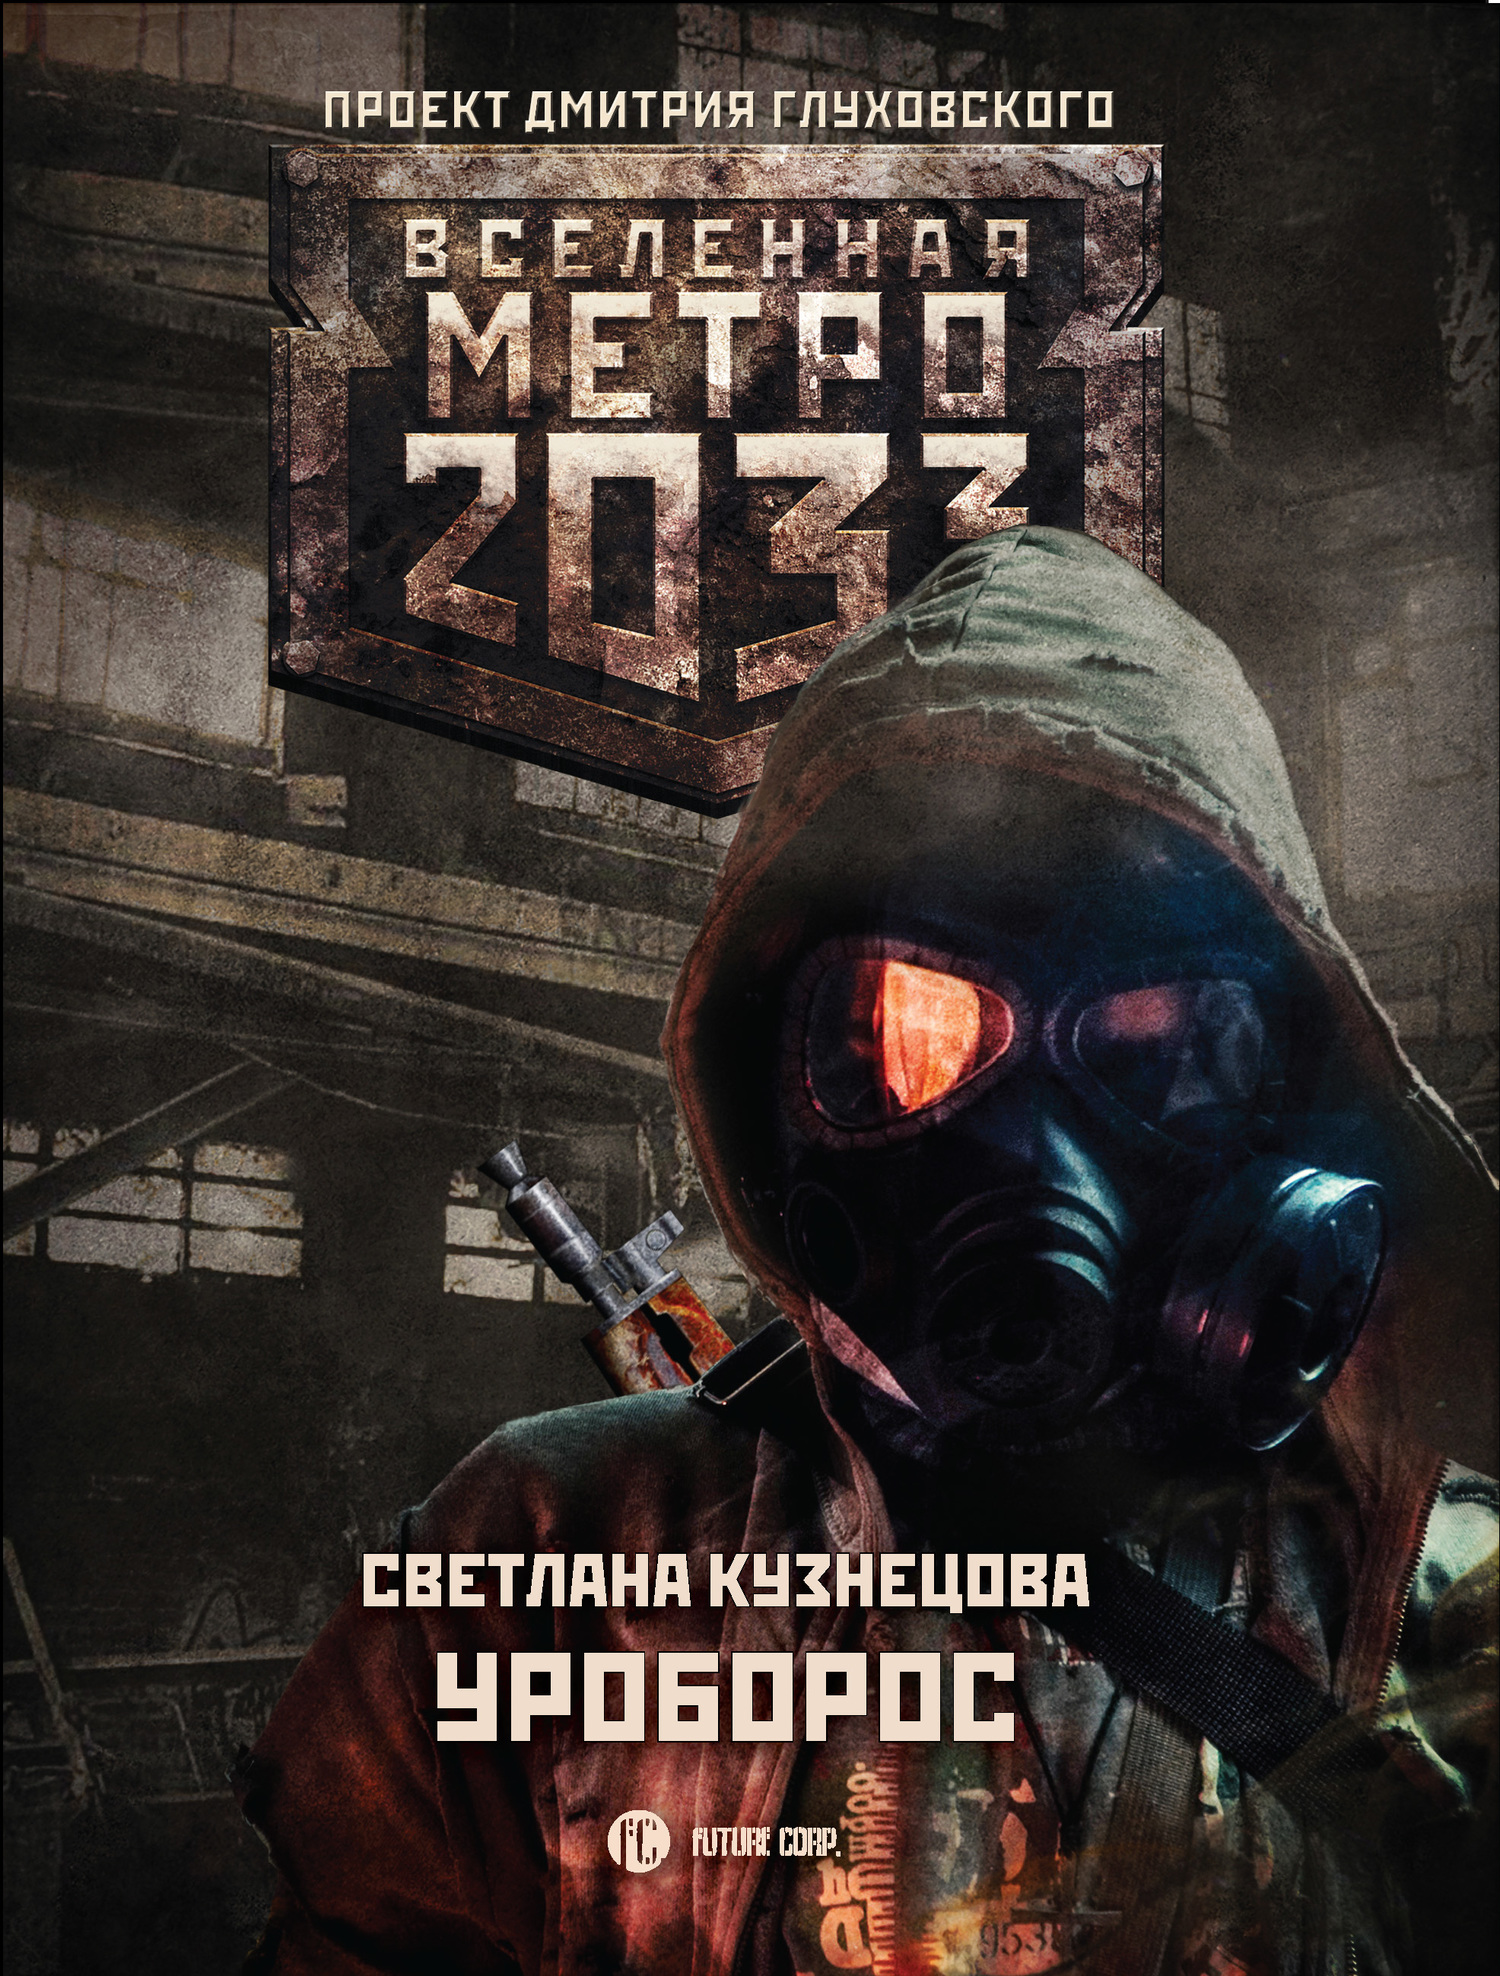 Кузнецова Светлана - Метро 2033: Уроборос скачать бесплатно